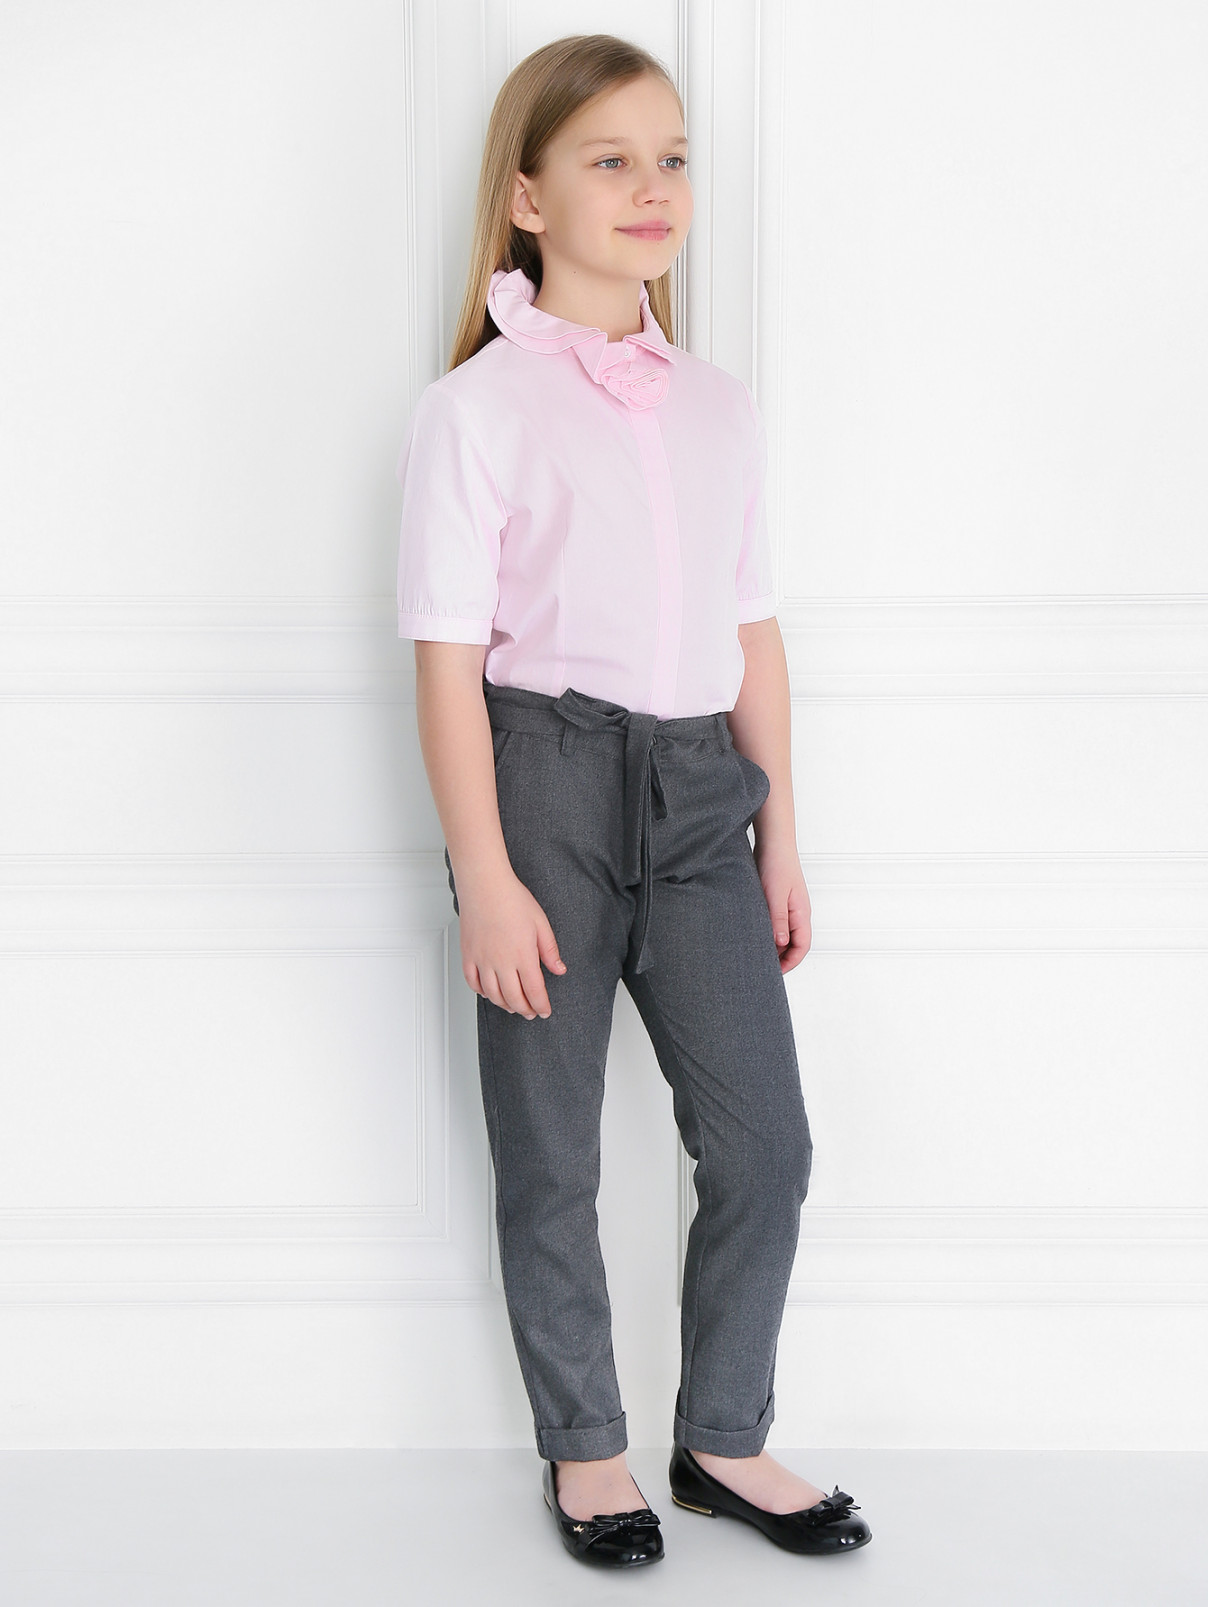 Хлопковая рубашка с коротким рукавом Aletta Couture  –  Модель Общий вид  – Цвет:  Розовый